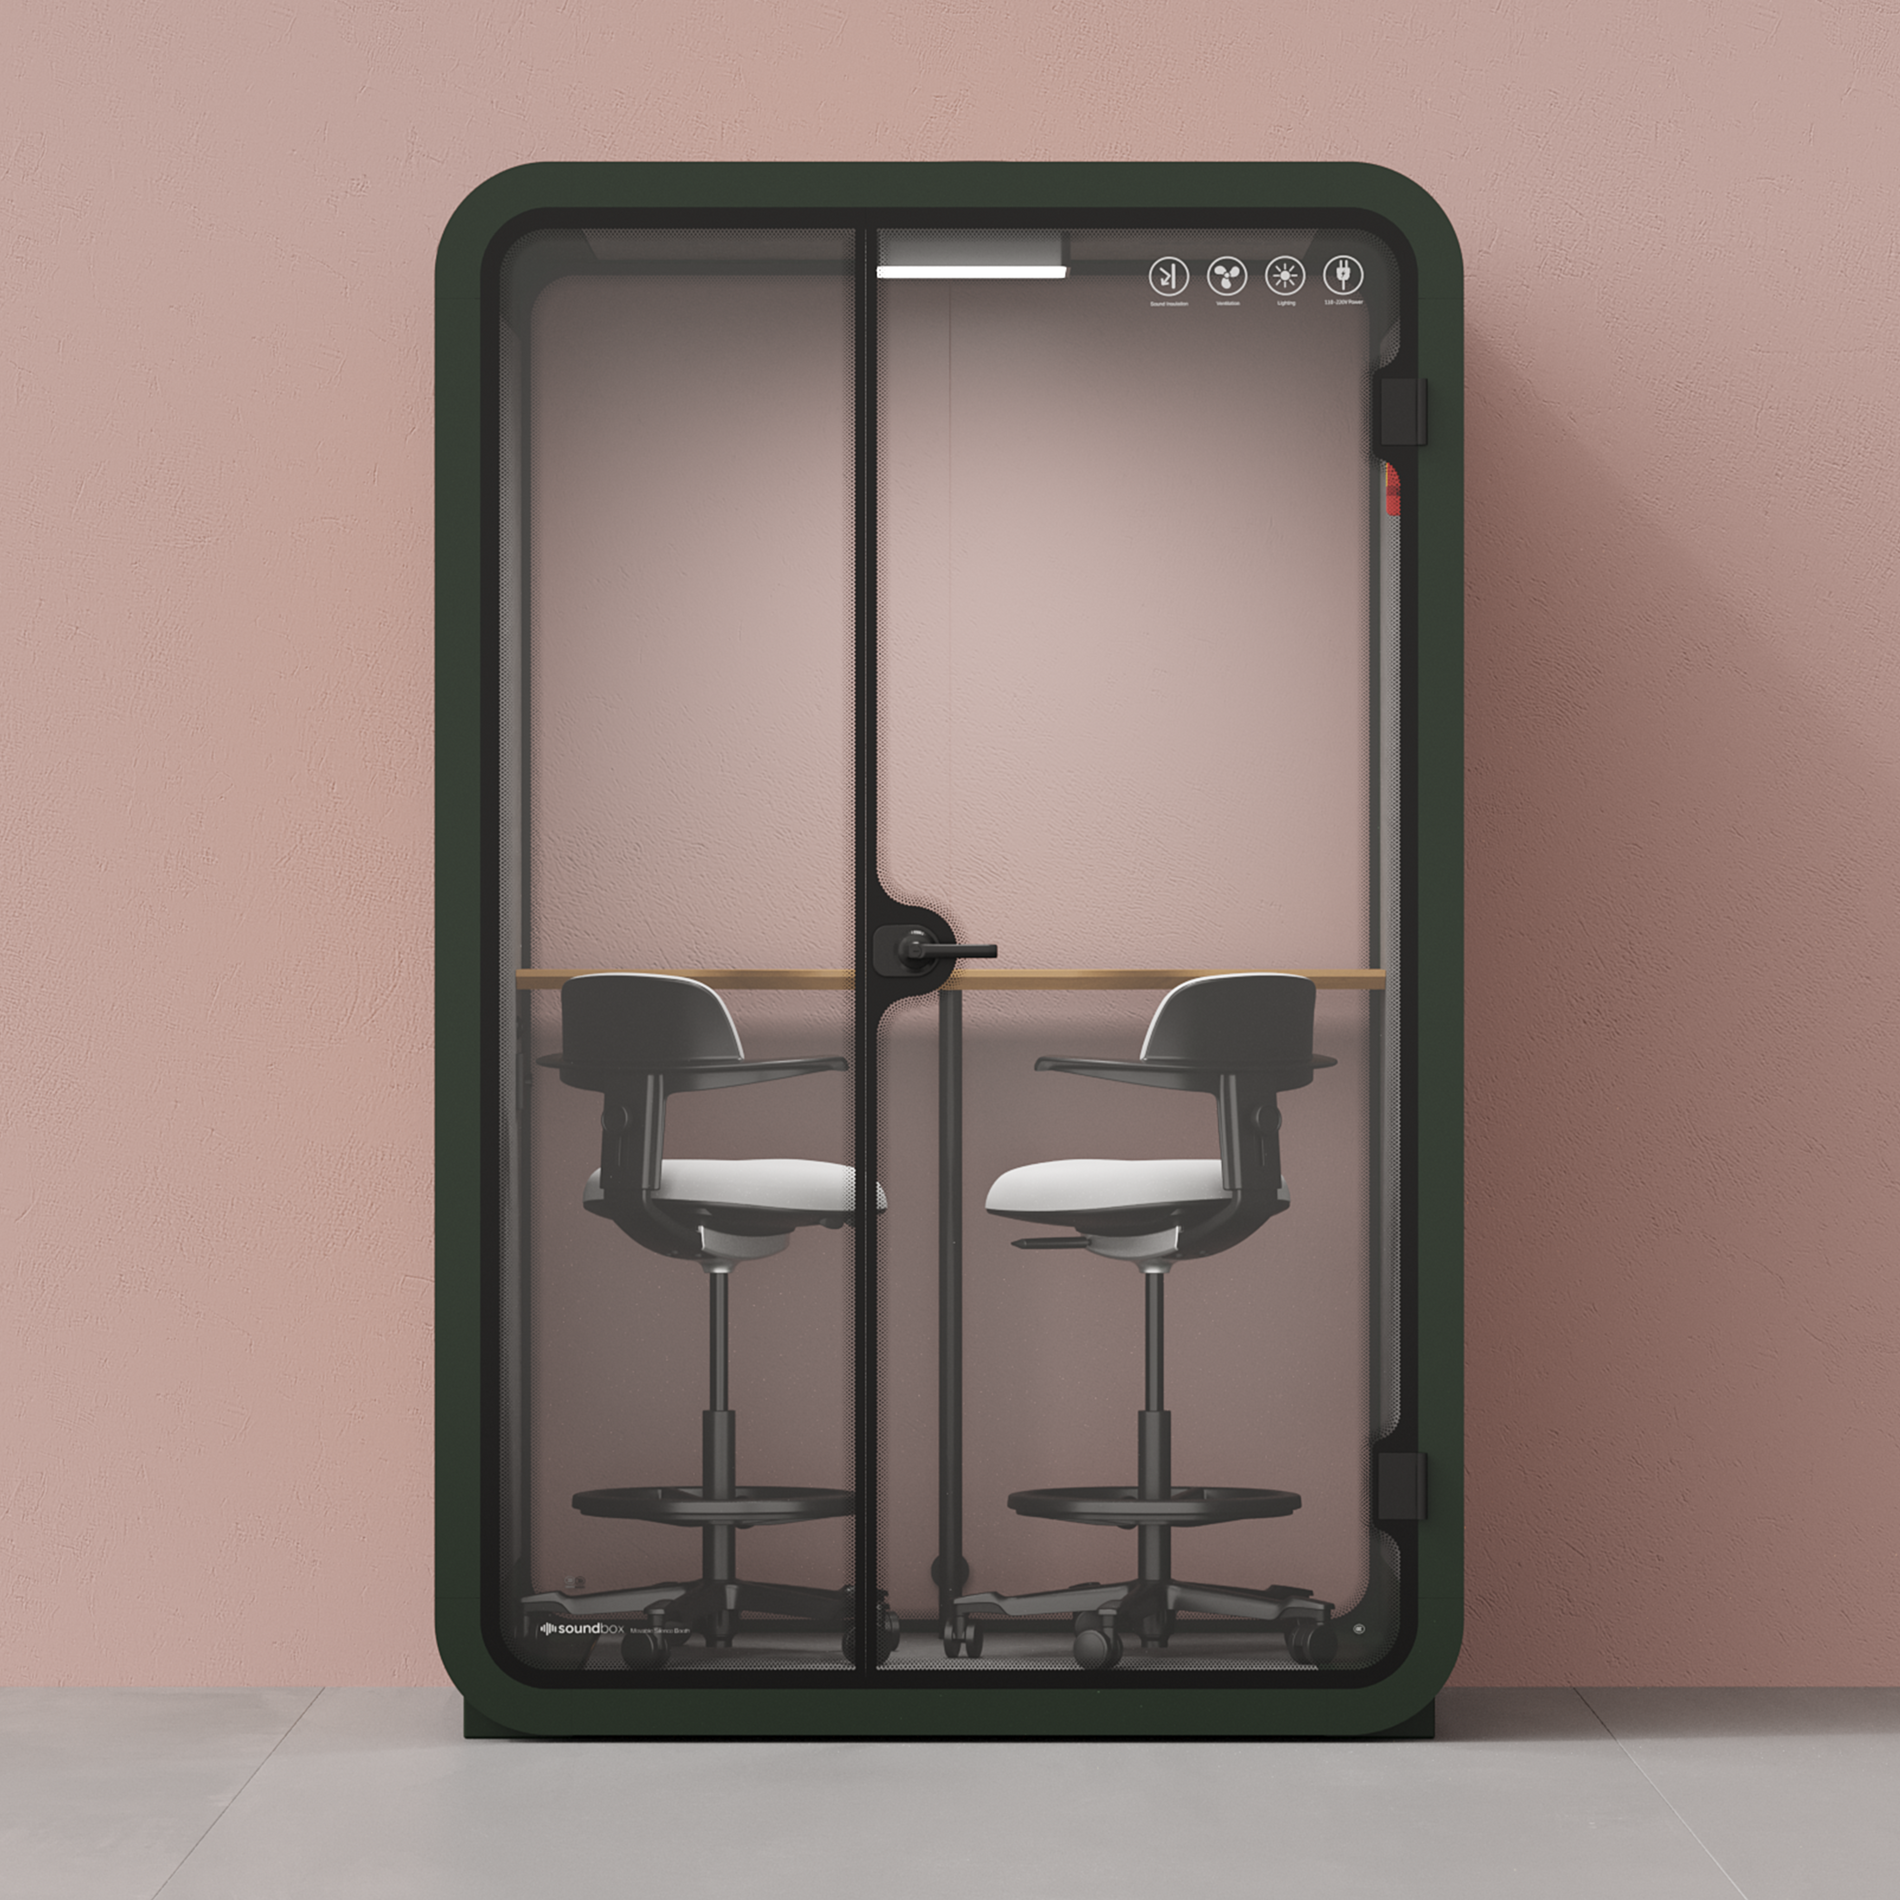 Quell Caseta de Oficina para Dos PersonasGreen / Dark Gray / Dual Zoom Room + Device Shelf + 2 Barstools